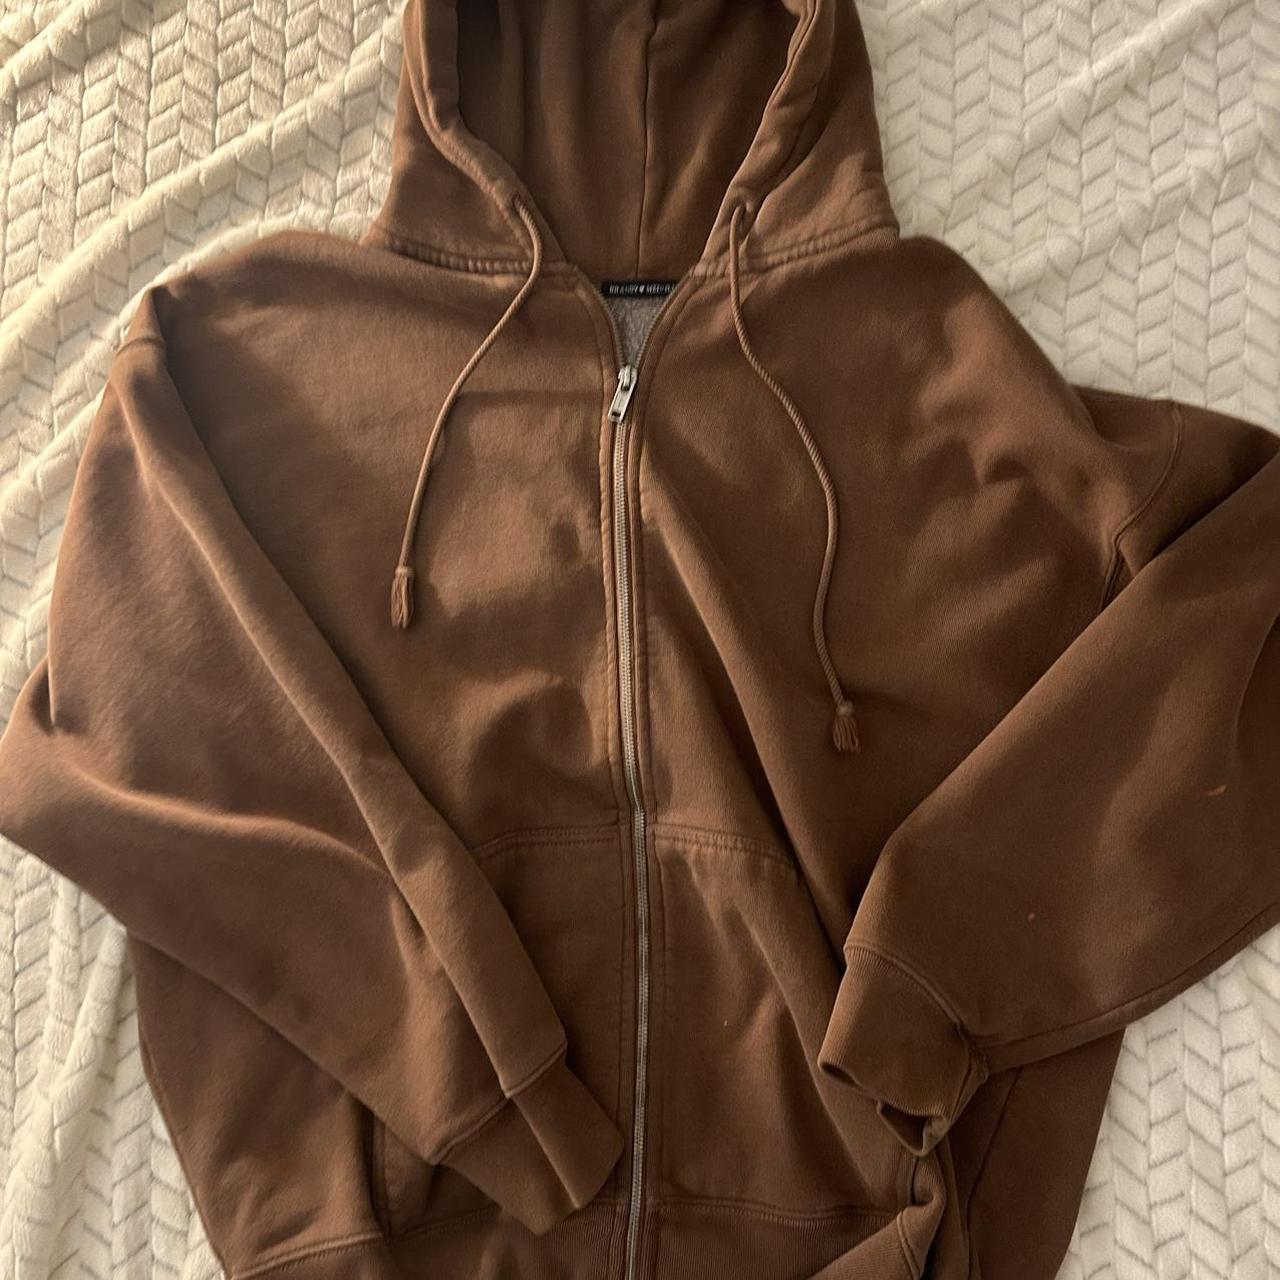 Brandy Melville brown cozy christy zip up hoodie • - Depop